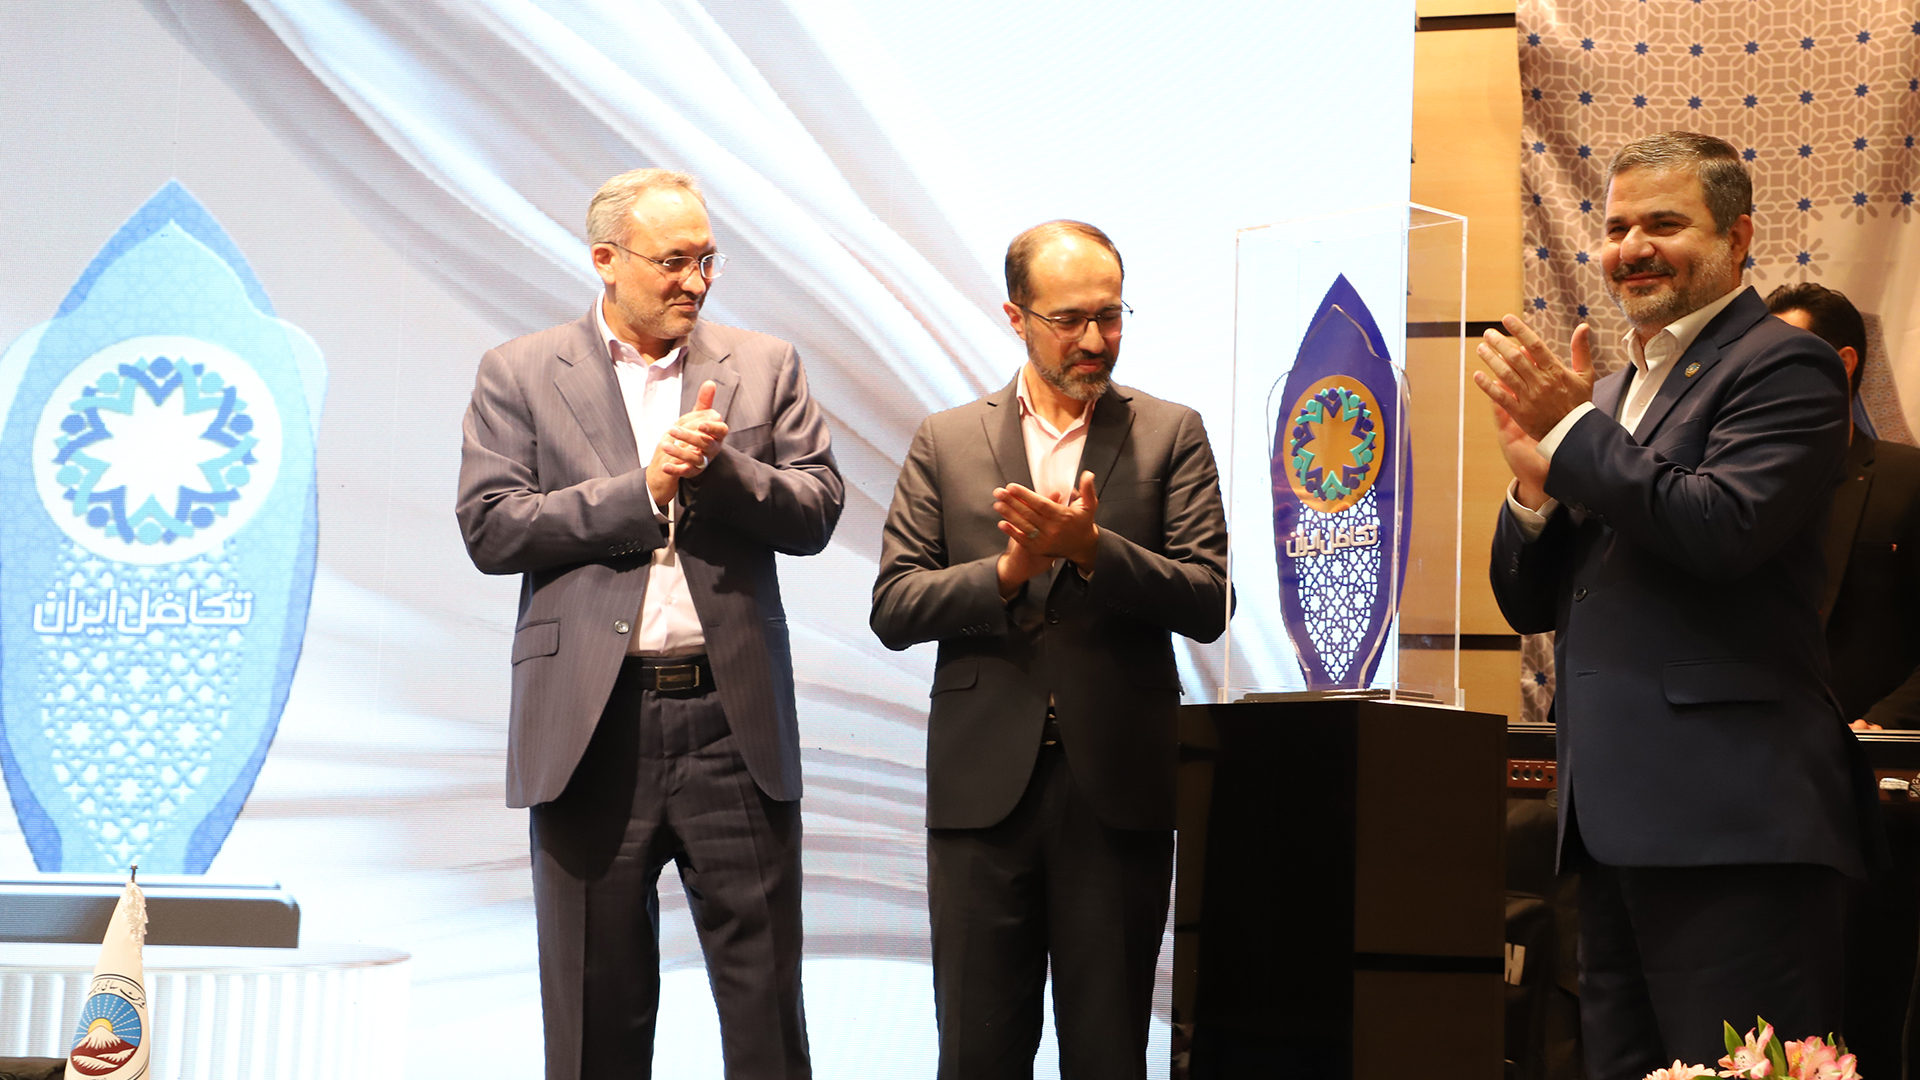 برگزاری مراسم گرامیداشت هشتاد و هشتمین سالروز تاسیس شرکت سهامی بیمه ایران